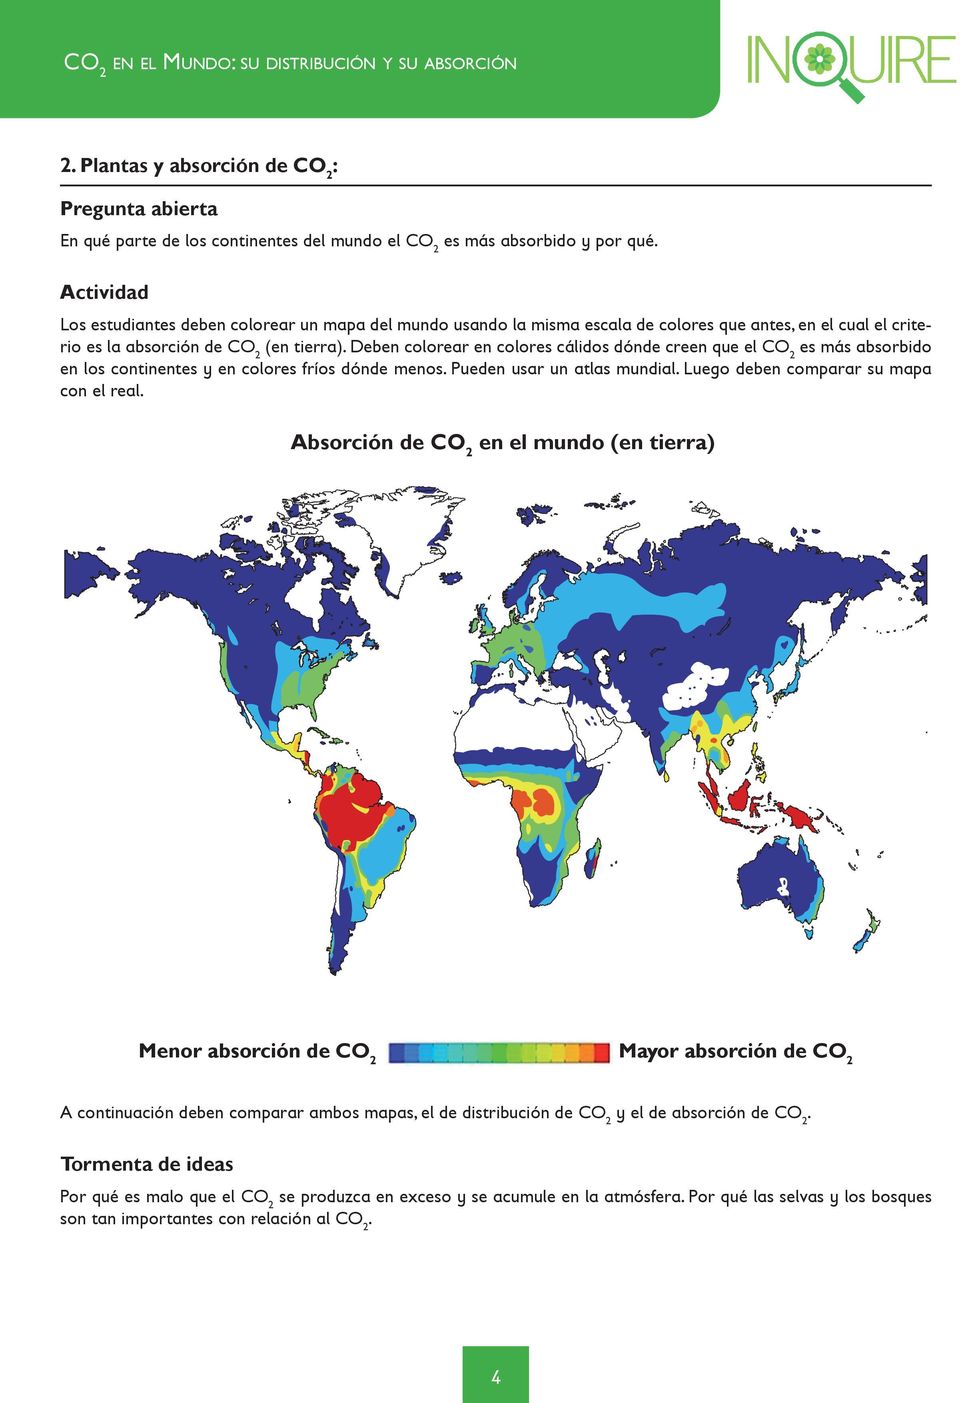 Deben colorear en colores cálidos dónde creen que el CO2 es más absorbido en los continentes y en colores fríos dónde menos. Pueden usar un atlas mundial. Luego deben comparar su mapa con el real.